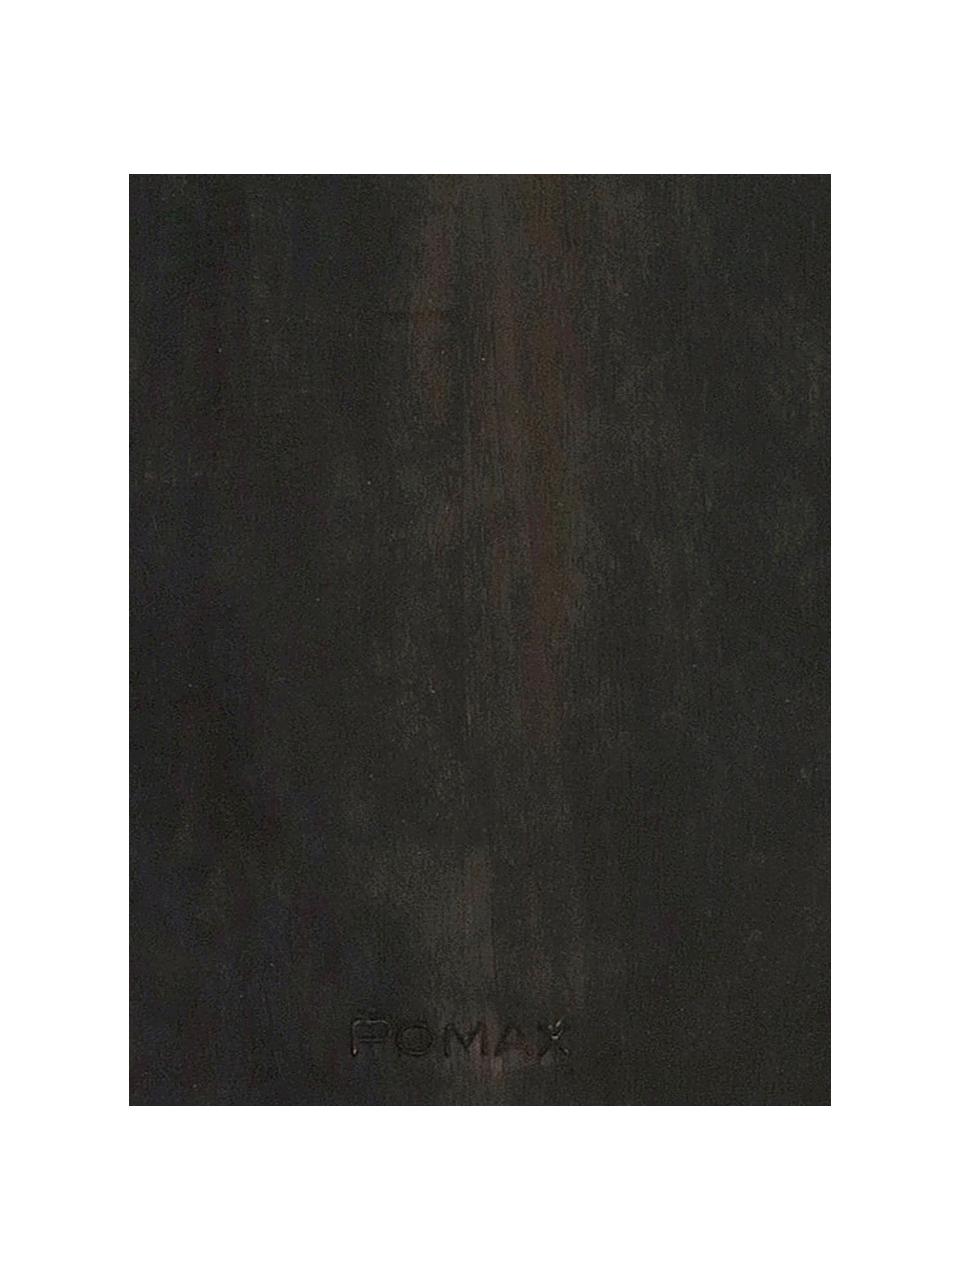 Deska do krojenia z drewna mangowego Limitless, Drewno mangowe, powlekane, Antracytowy, S 50 x D 22 cm